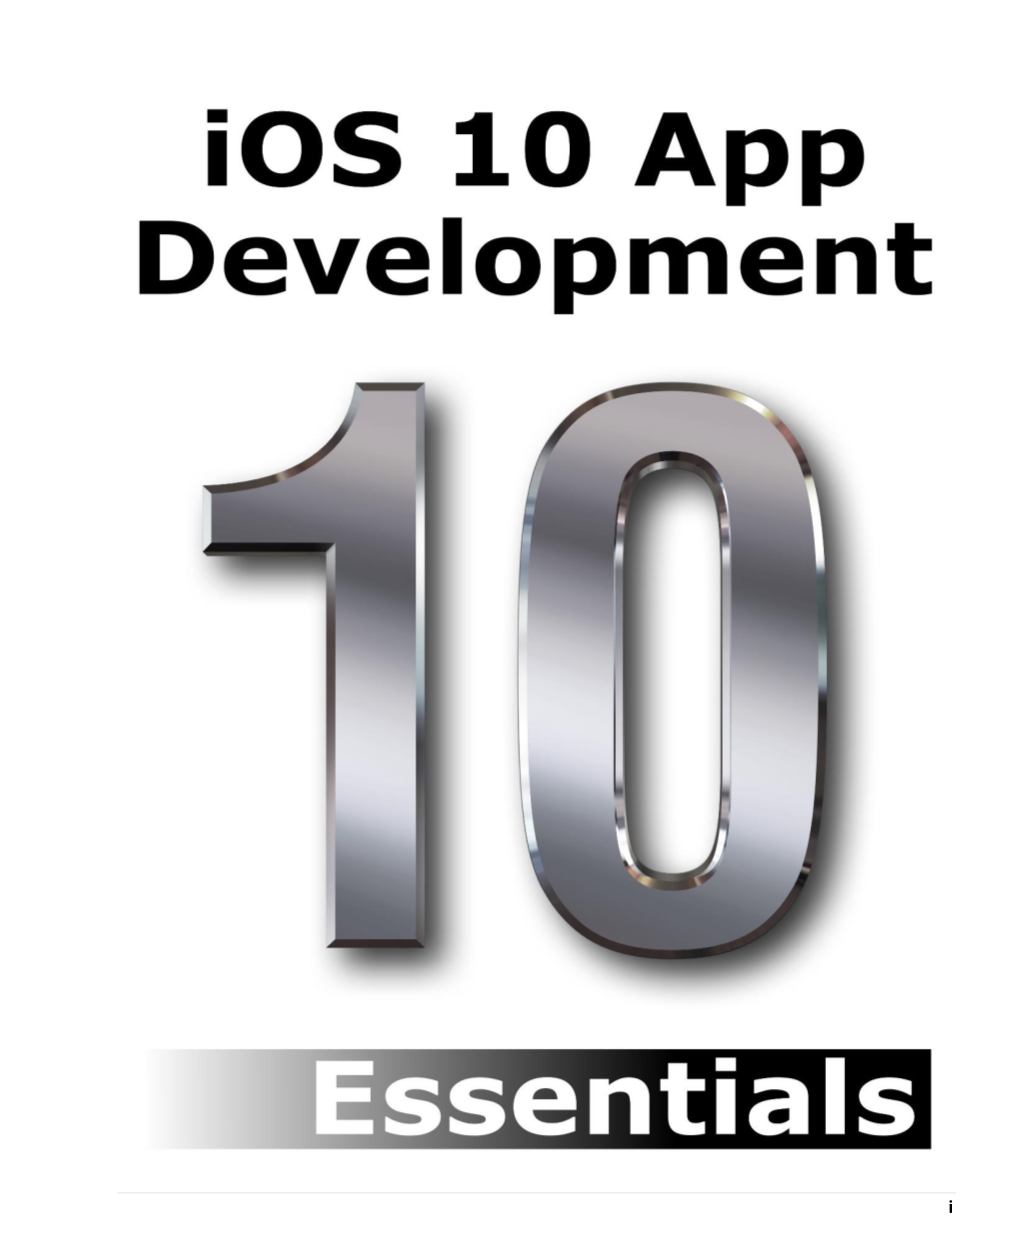 Ios 10 App Development Essentials